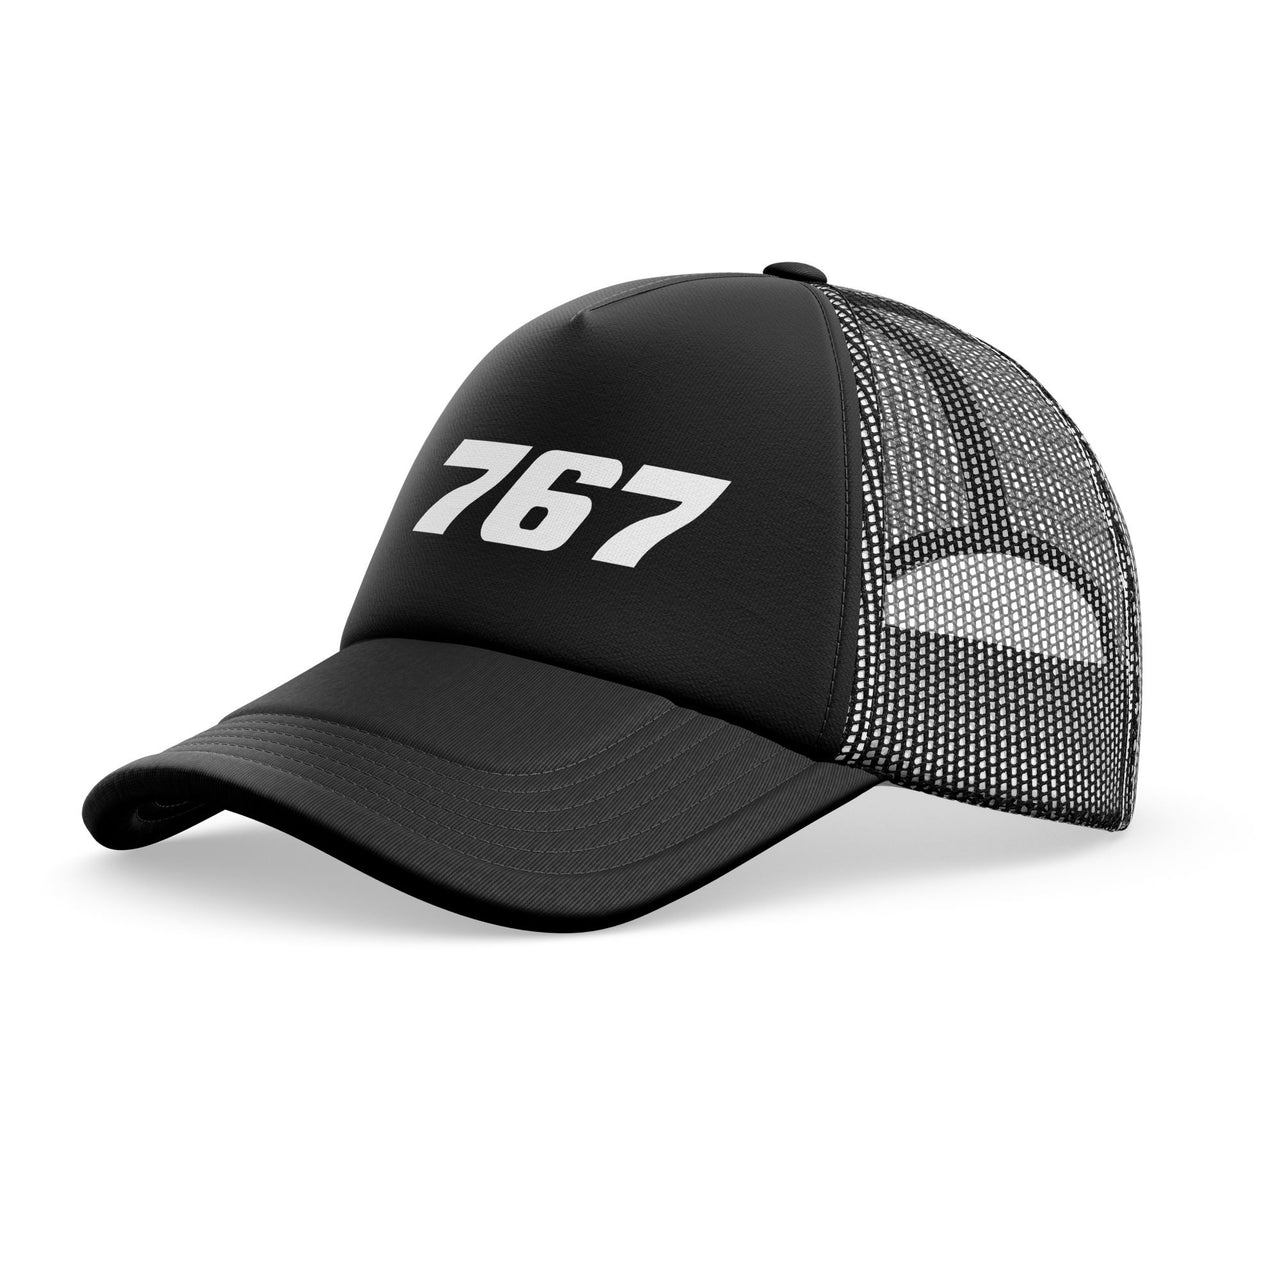 767 Flat Text Designed Trucker Caps & Hats